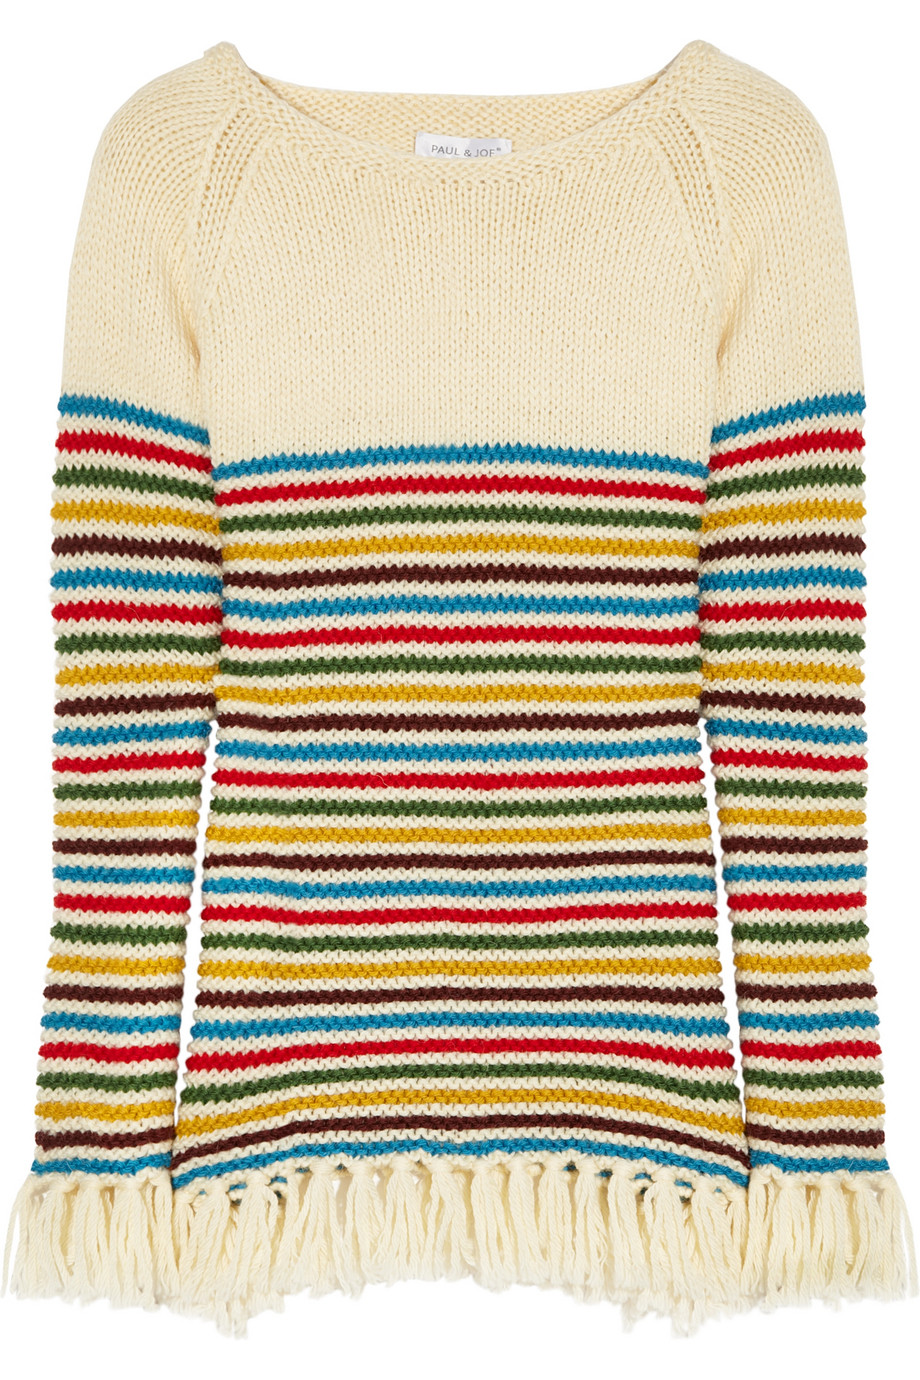 Lyst - Paul & joe Potosi Striped Wool Sweater